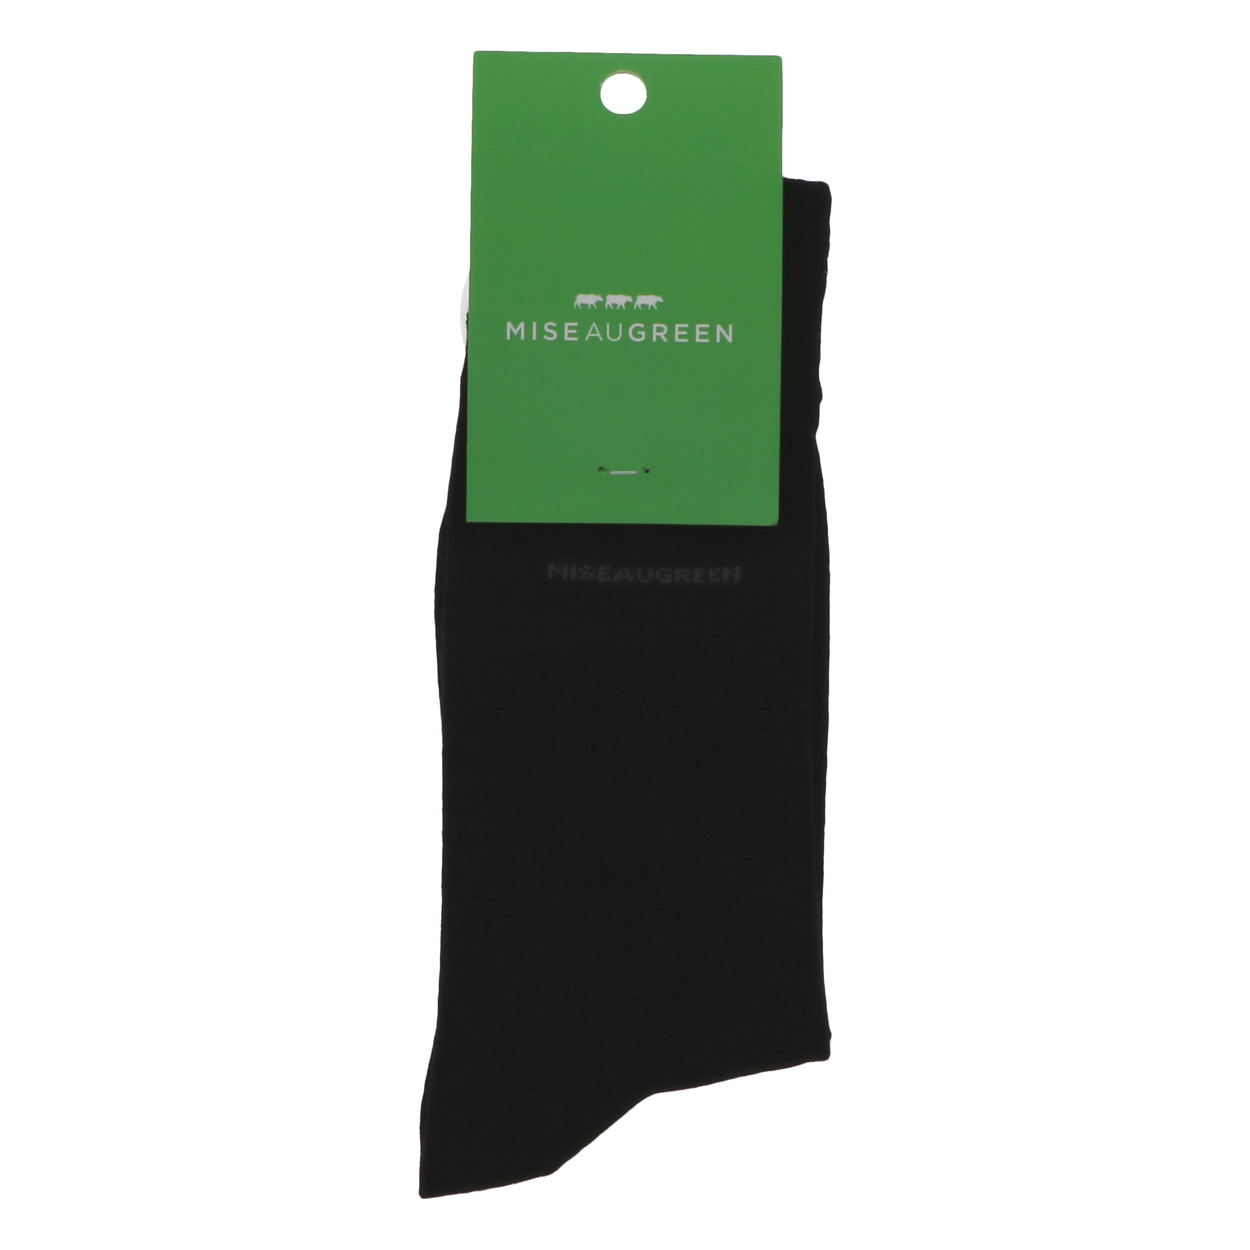 chaussettes hautes mise au green noires avec nom de la marque